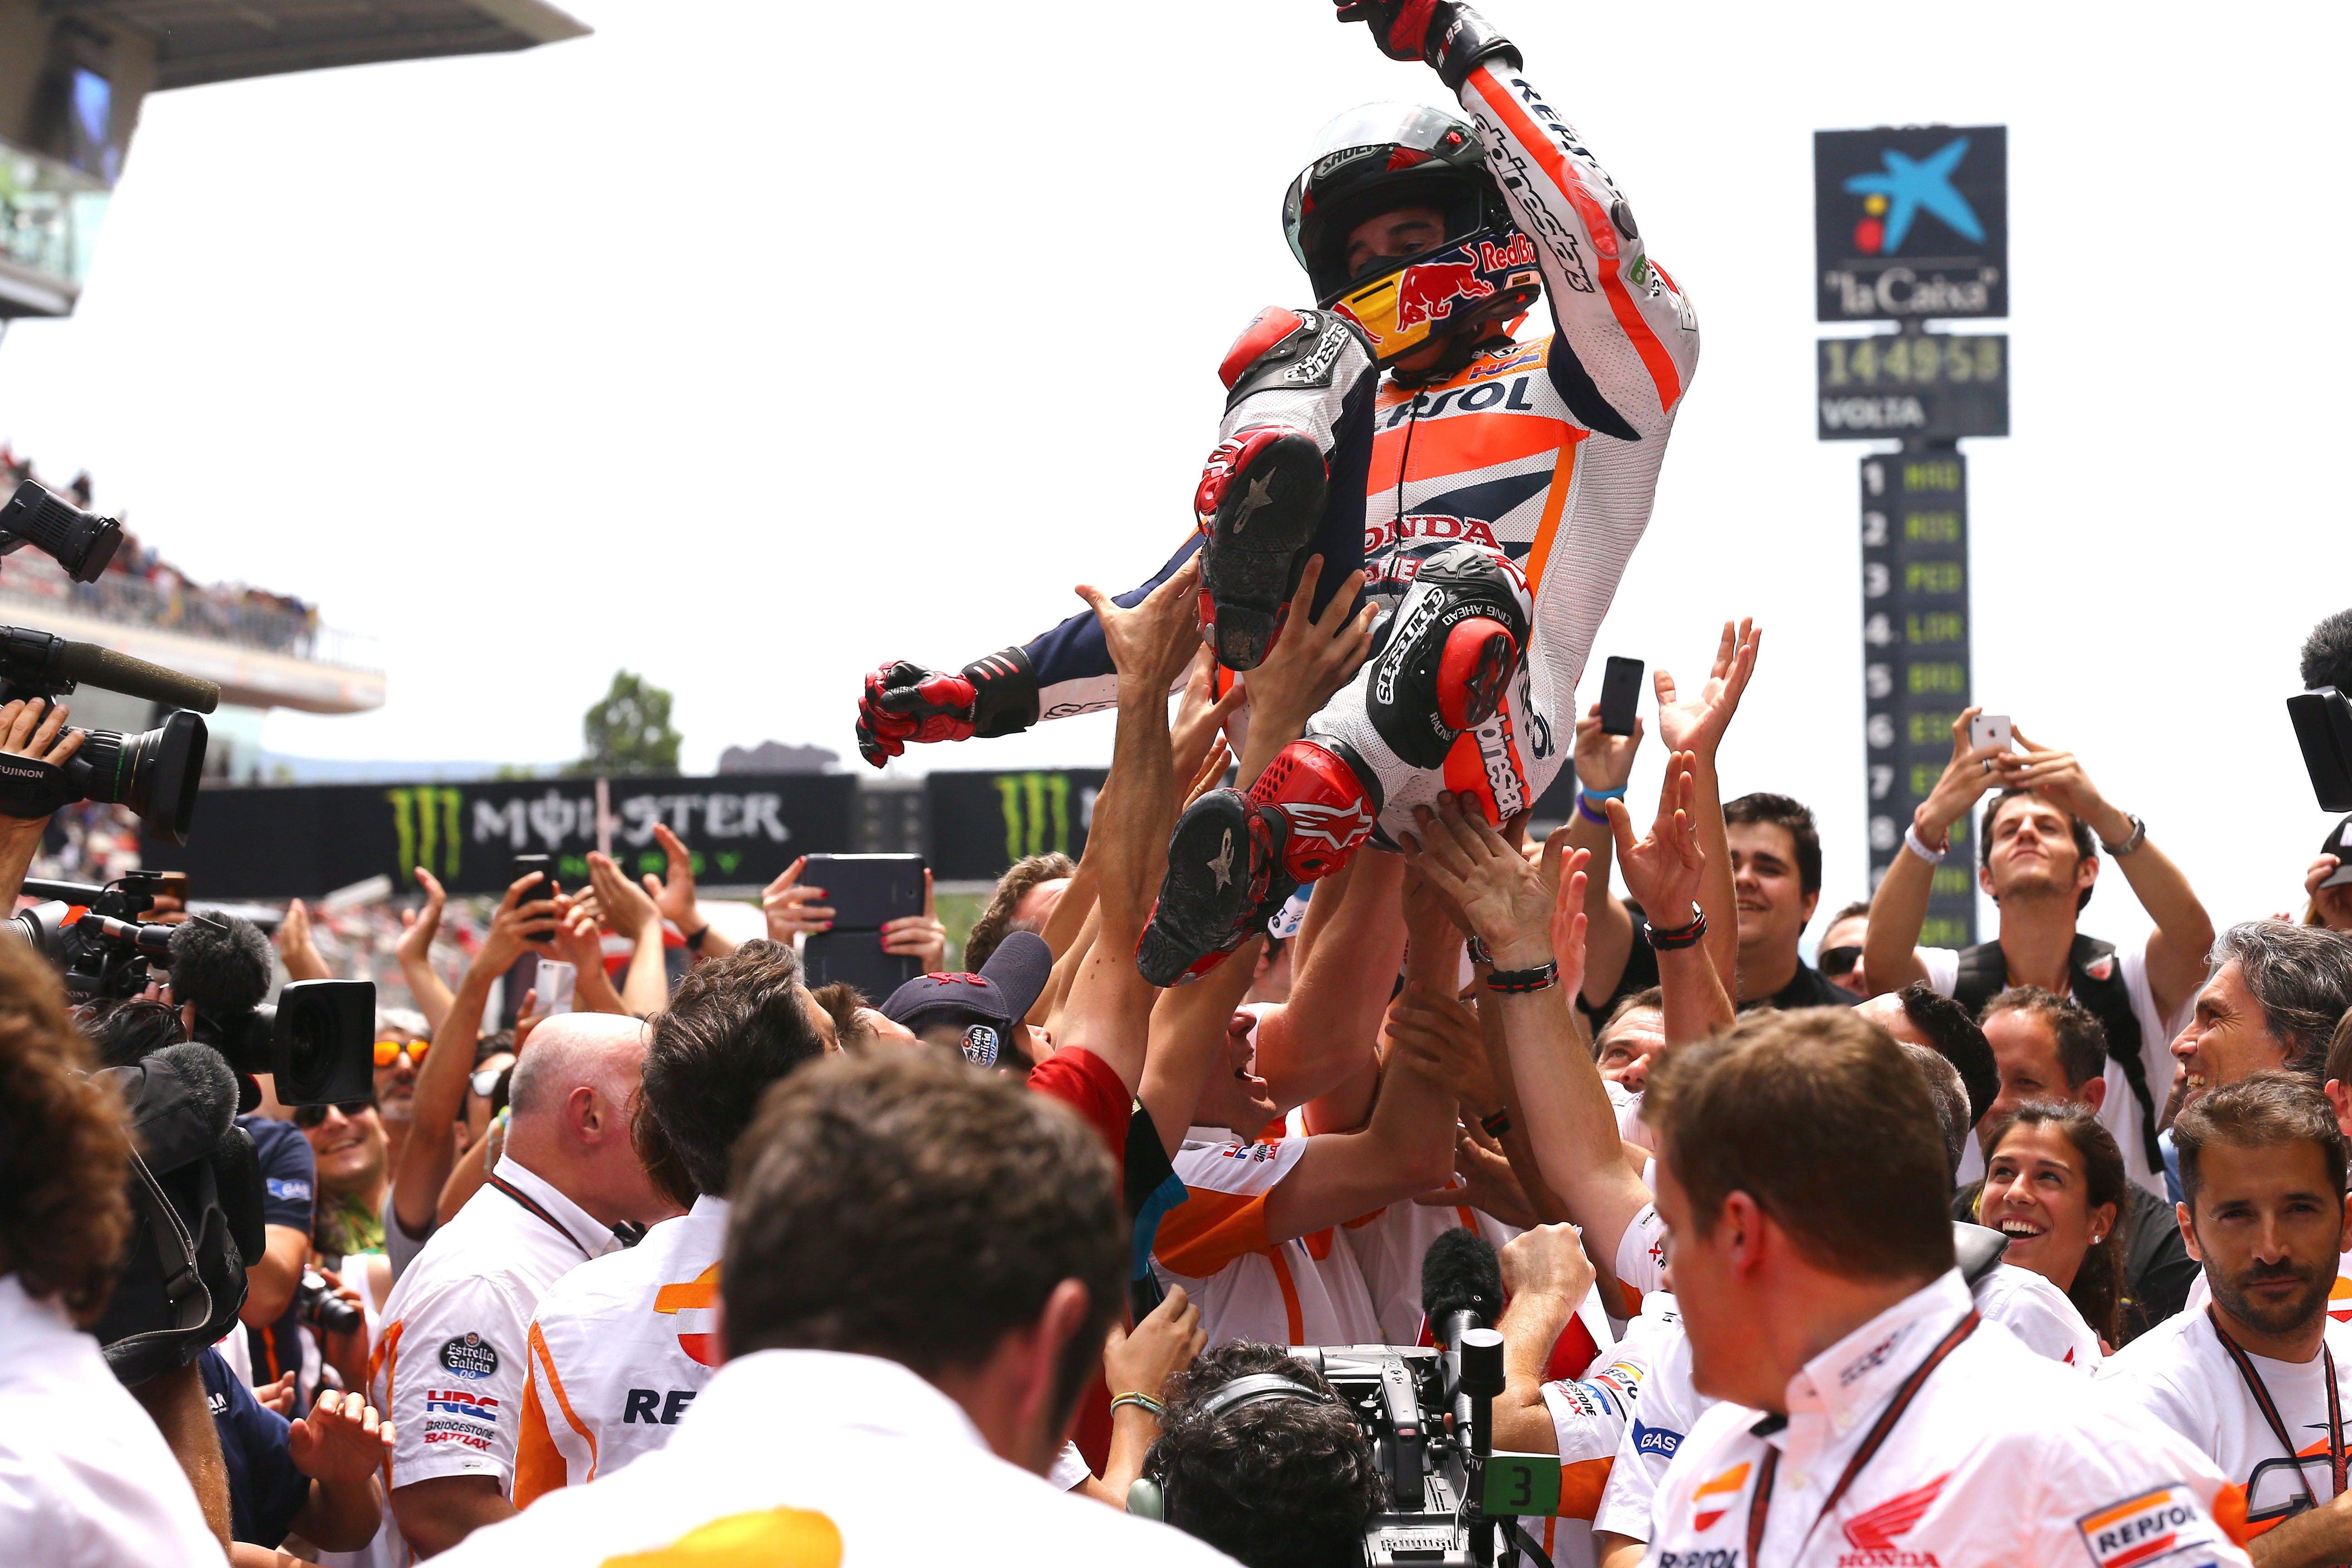 MotoGP 2014: Championship standings after Catalunya